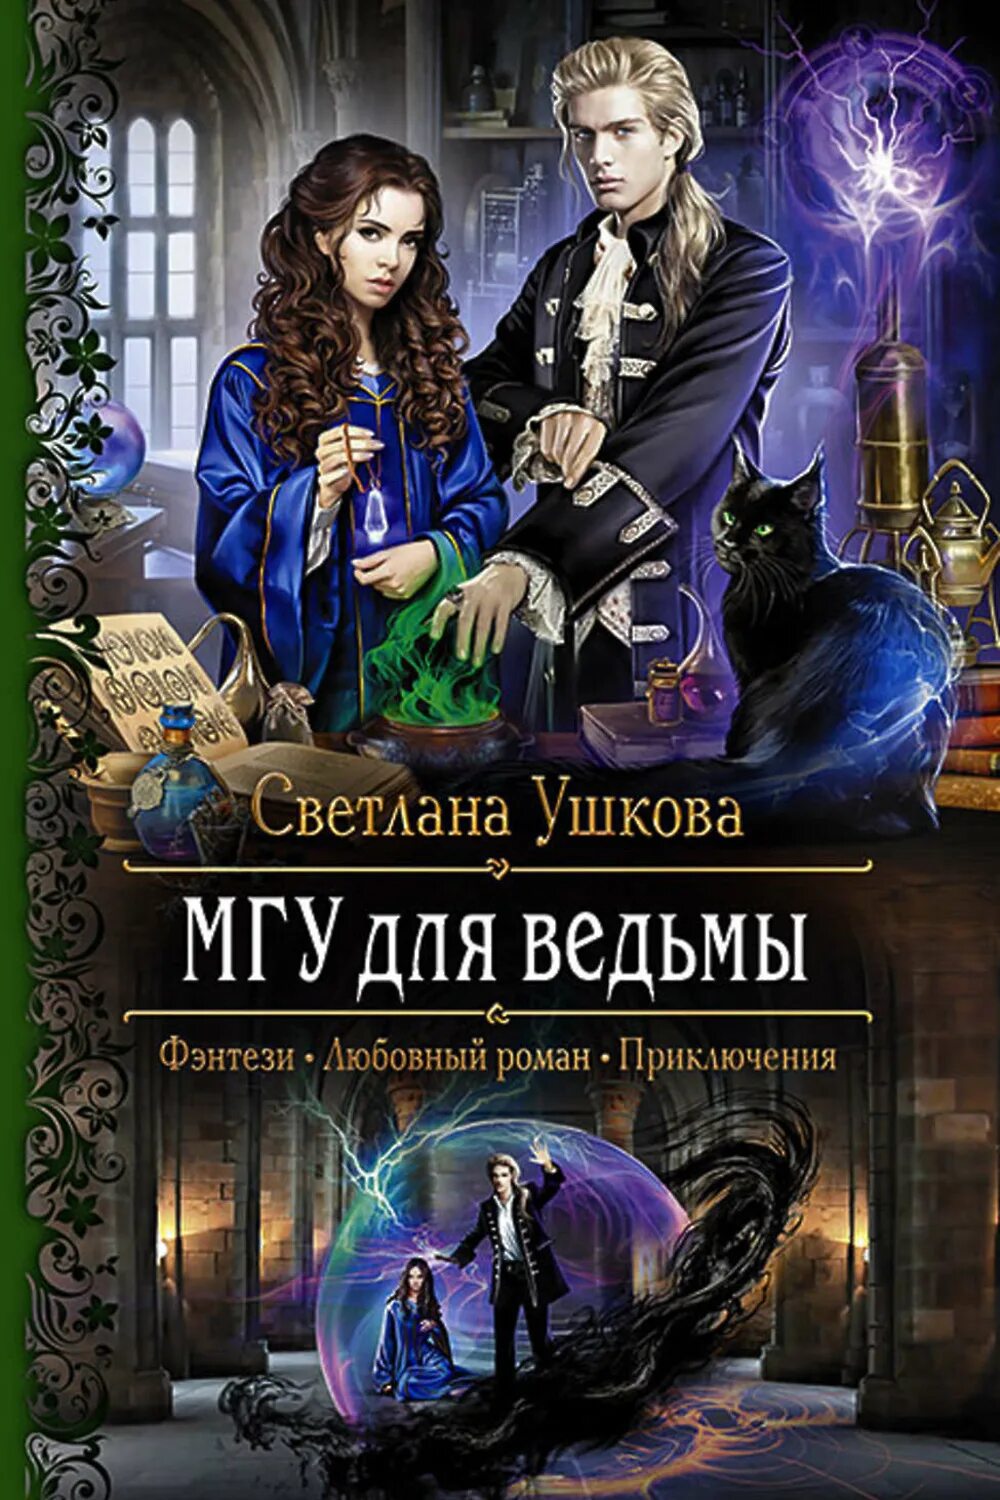 Ведьма цикл книг. Книга МГУ для ведьмы.